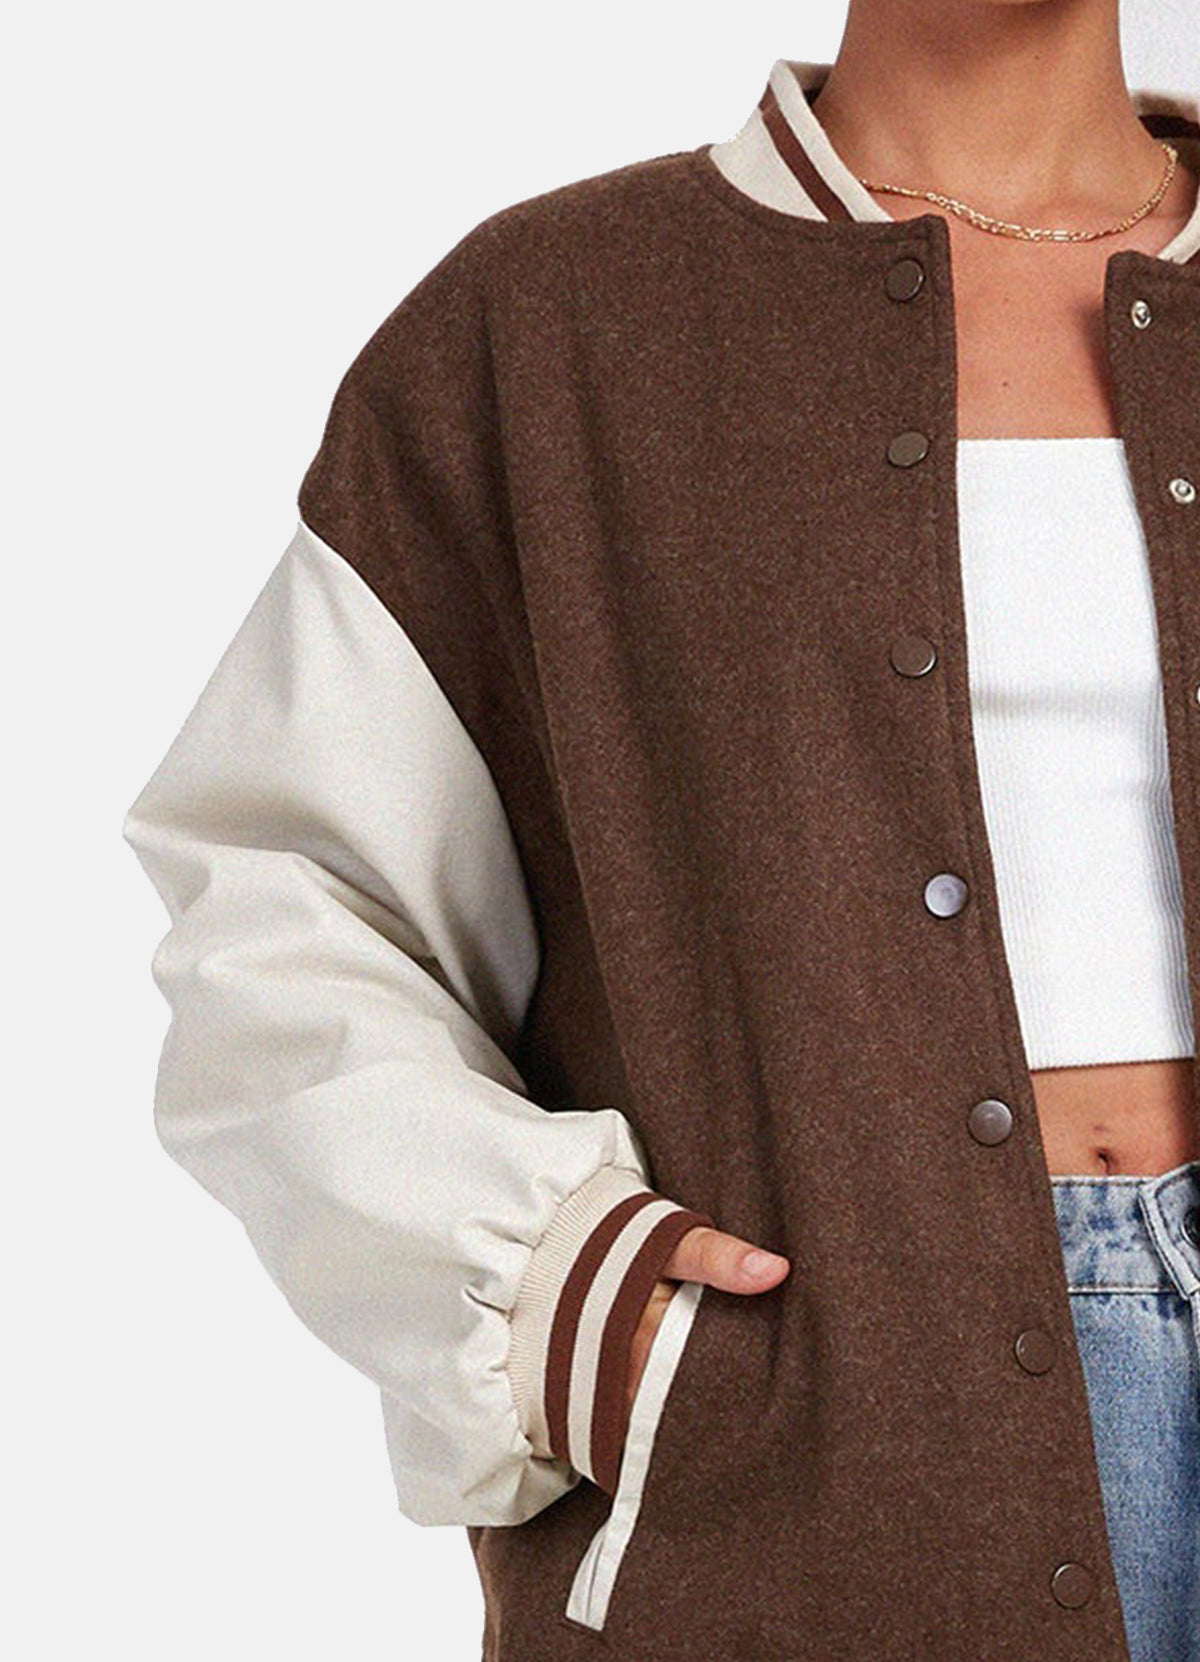 Womens Brown and White Oversized Varsity Jacket | Elite Jacket